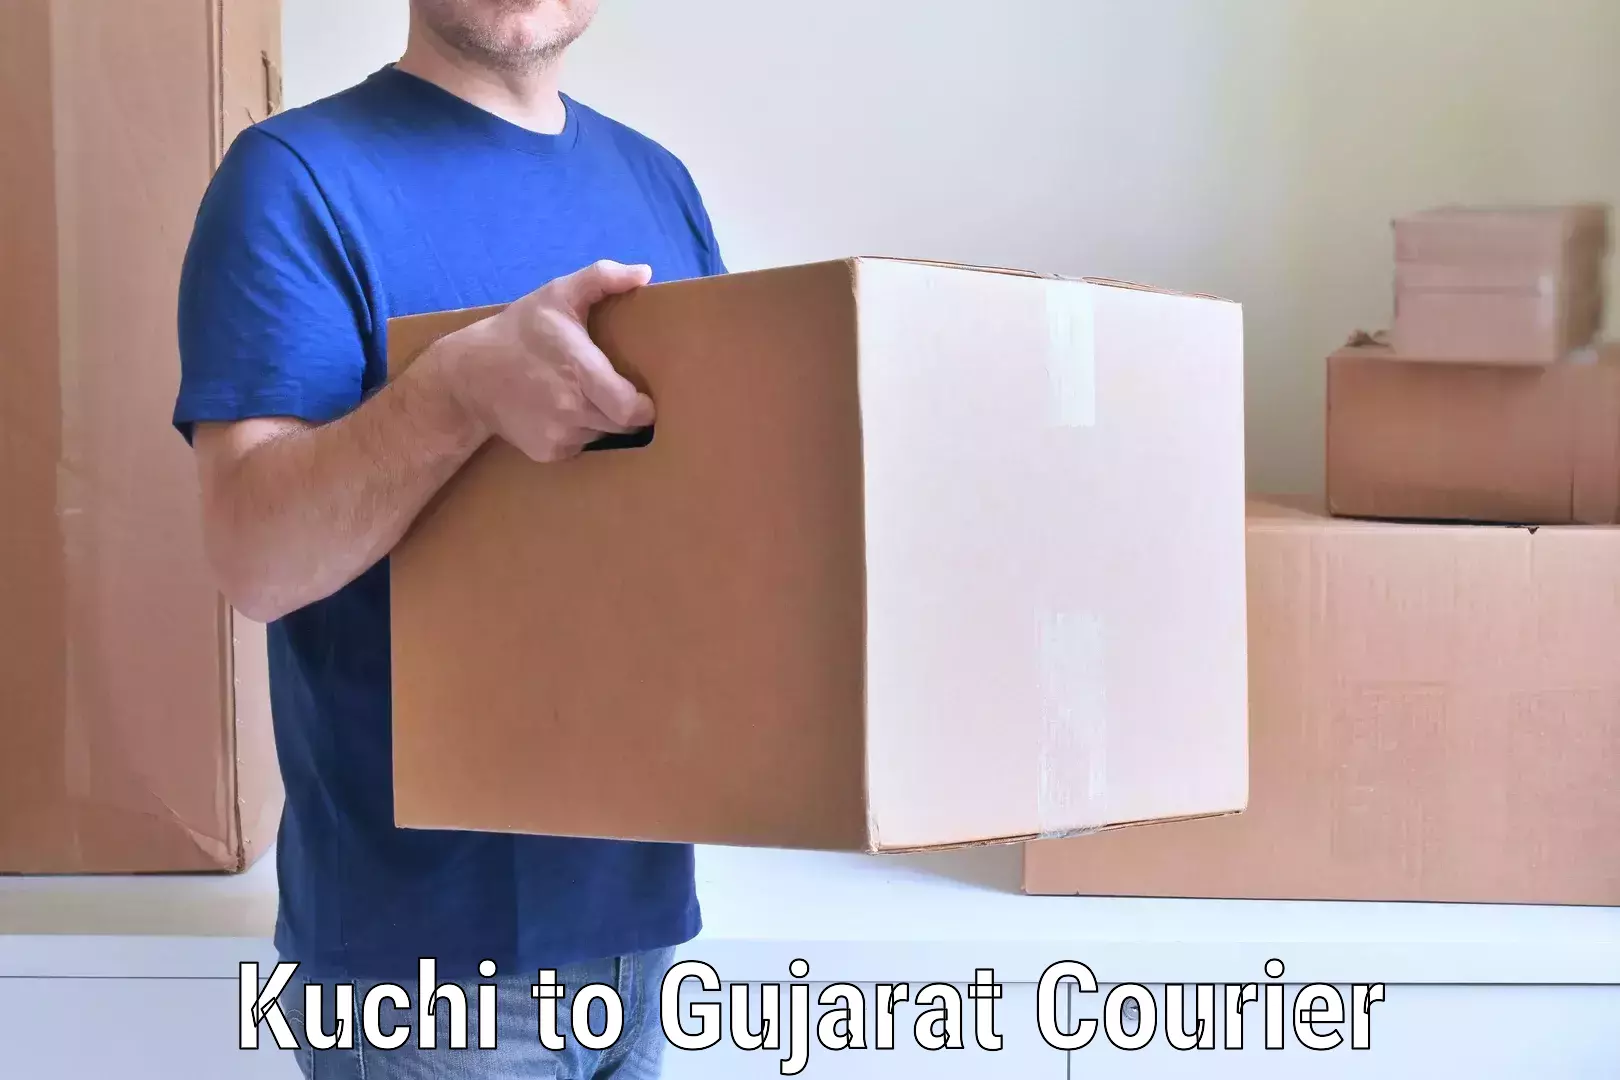 Home shifting experts Kuchi to Bhatiya